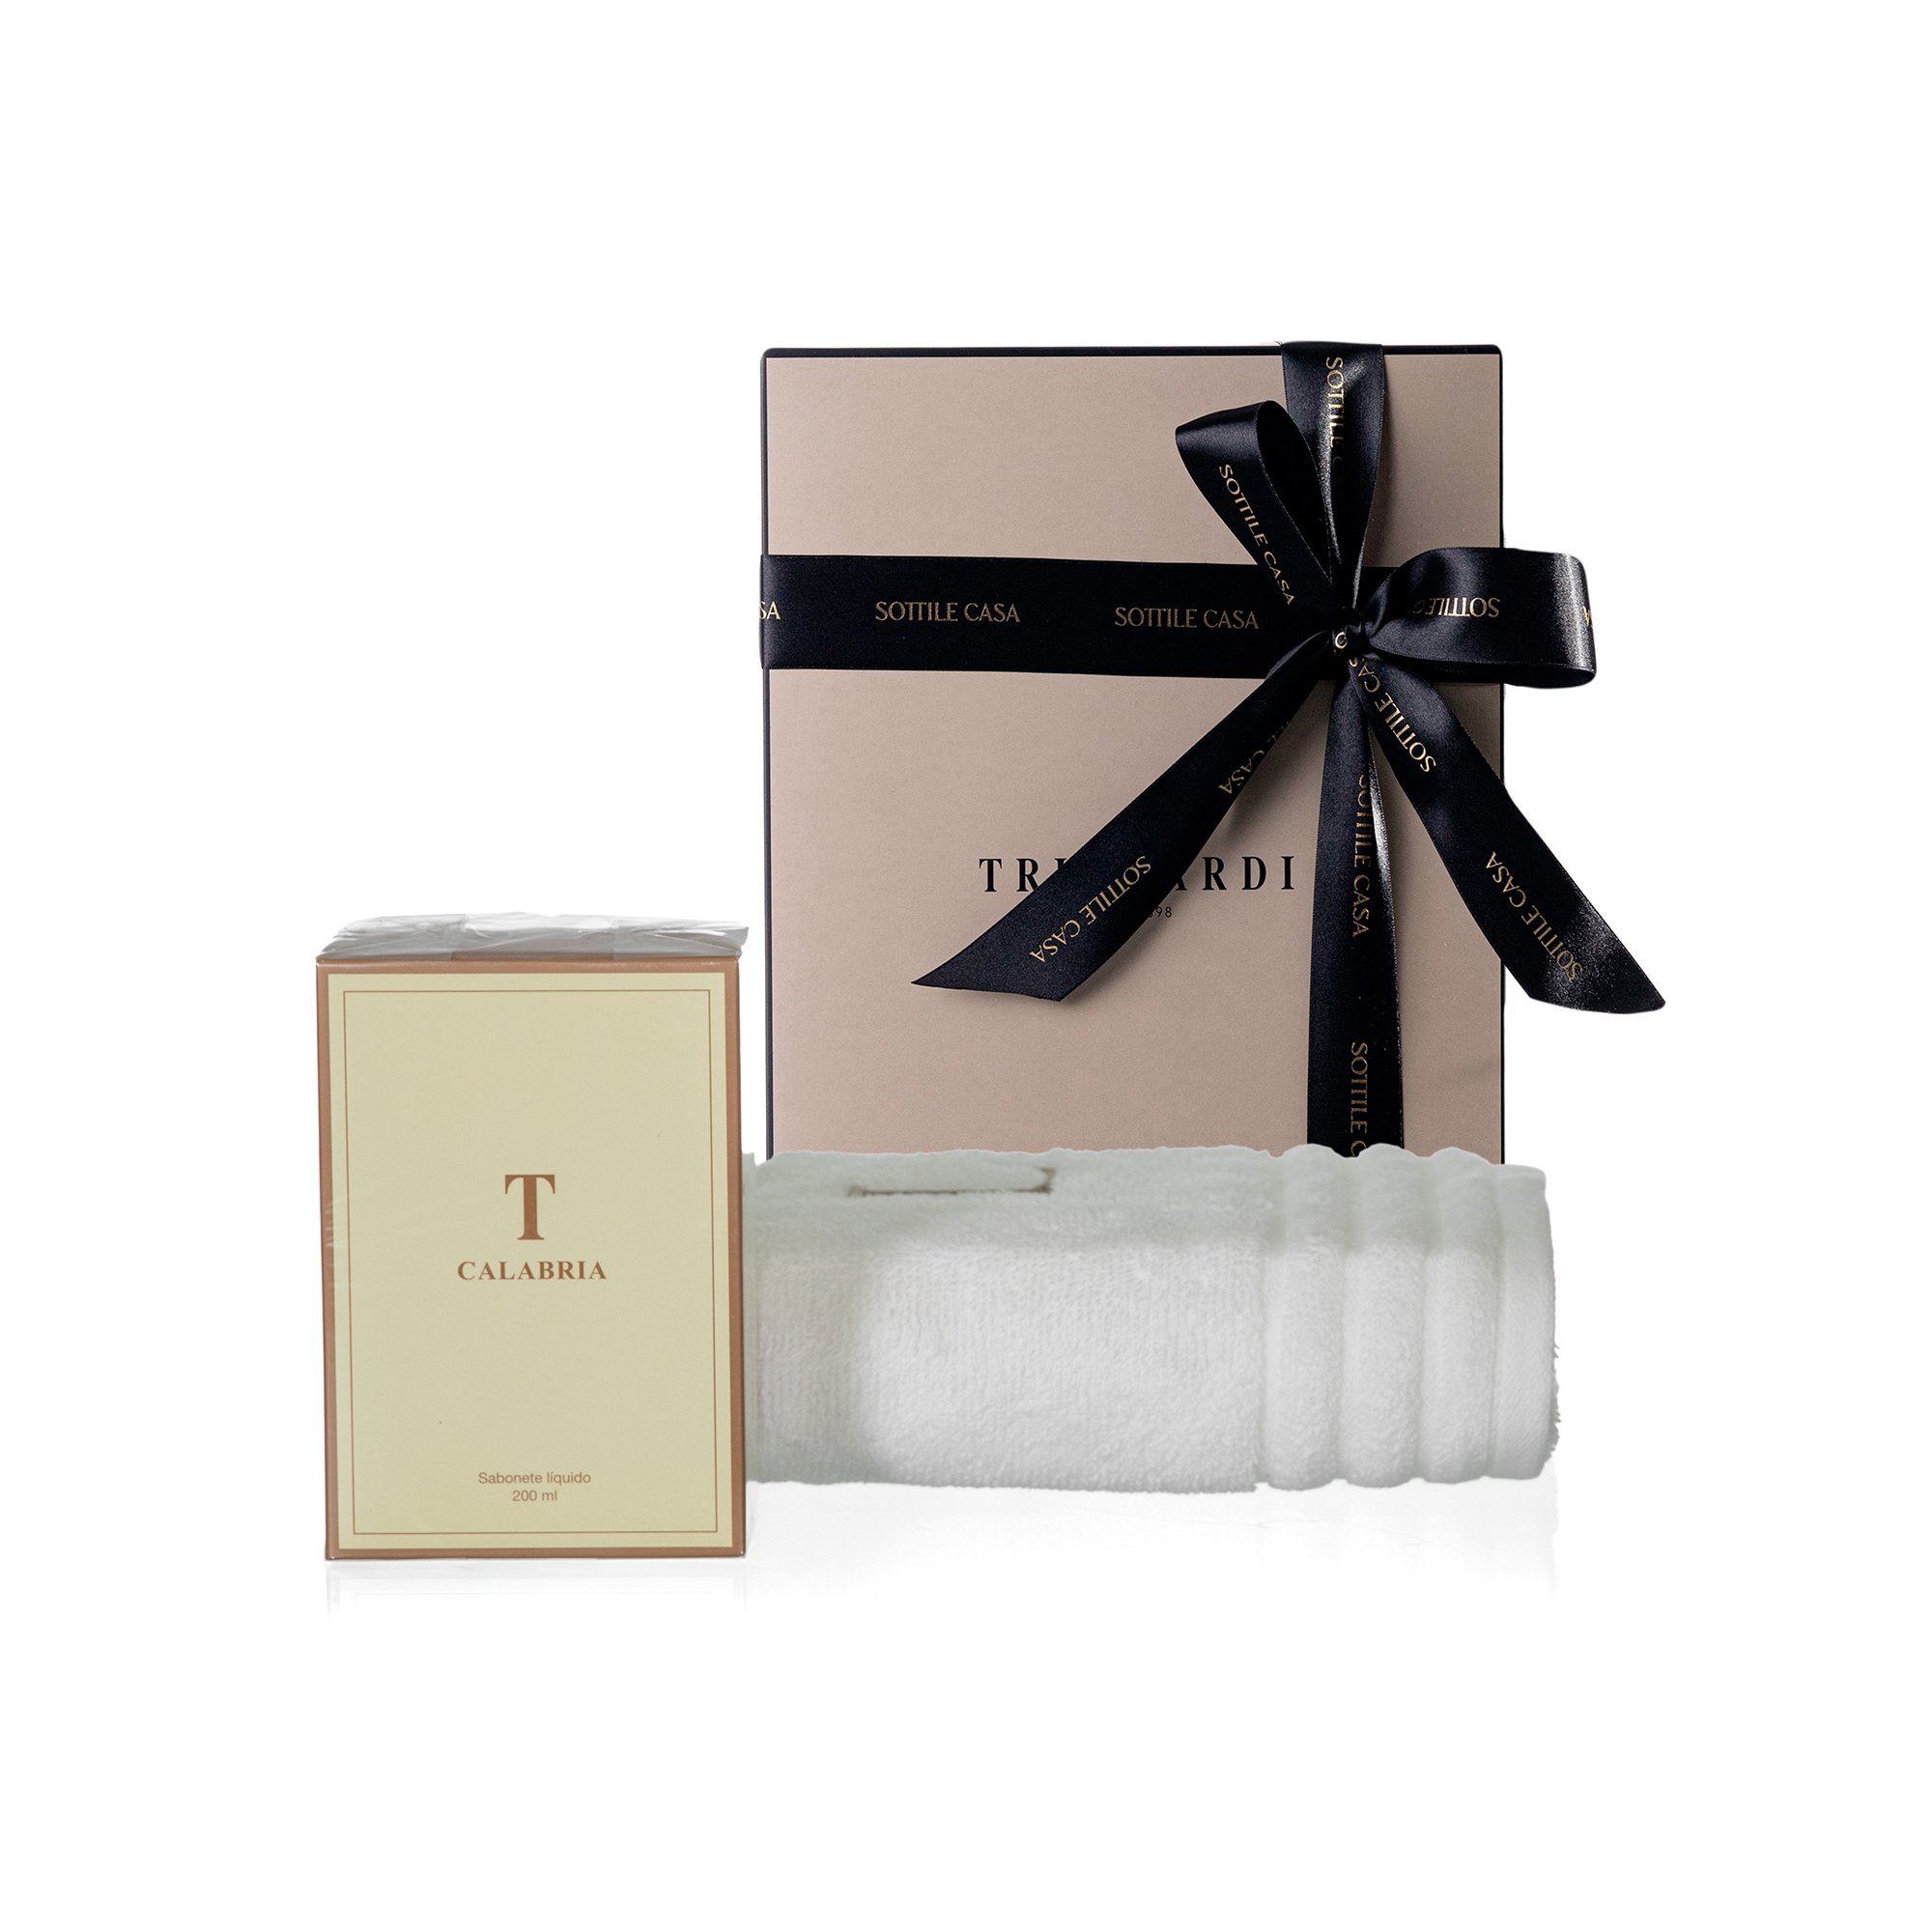 kit toalha de rosto 100 algodao trussardi imperiale branco com sabonete liquido trussardi 200ml calabria com caixa de presente 3